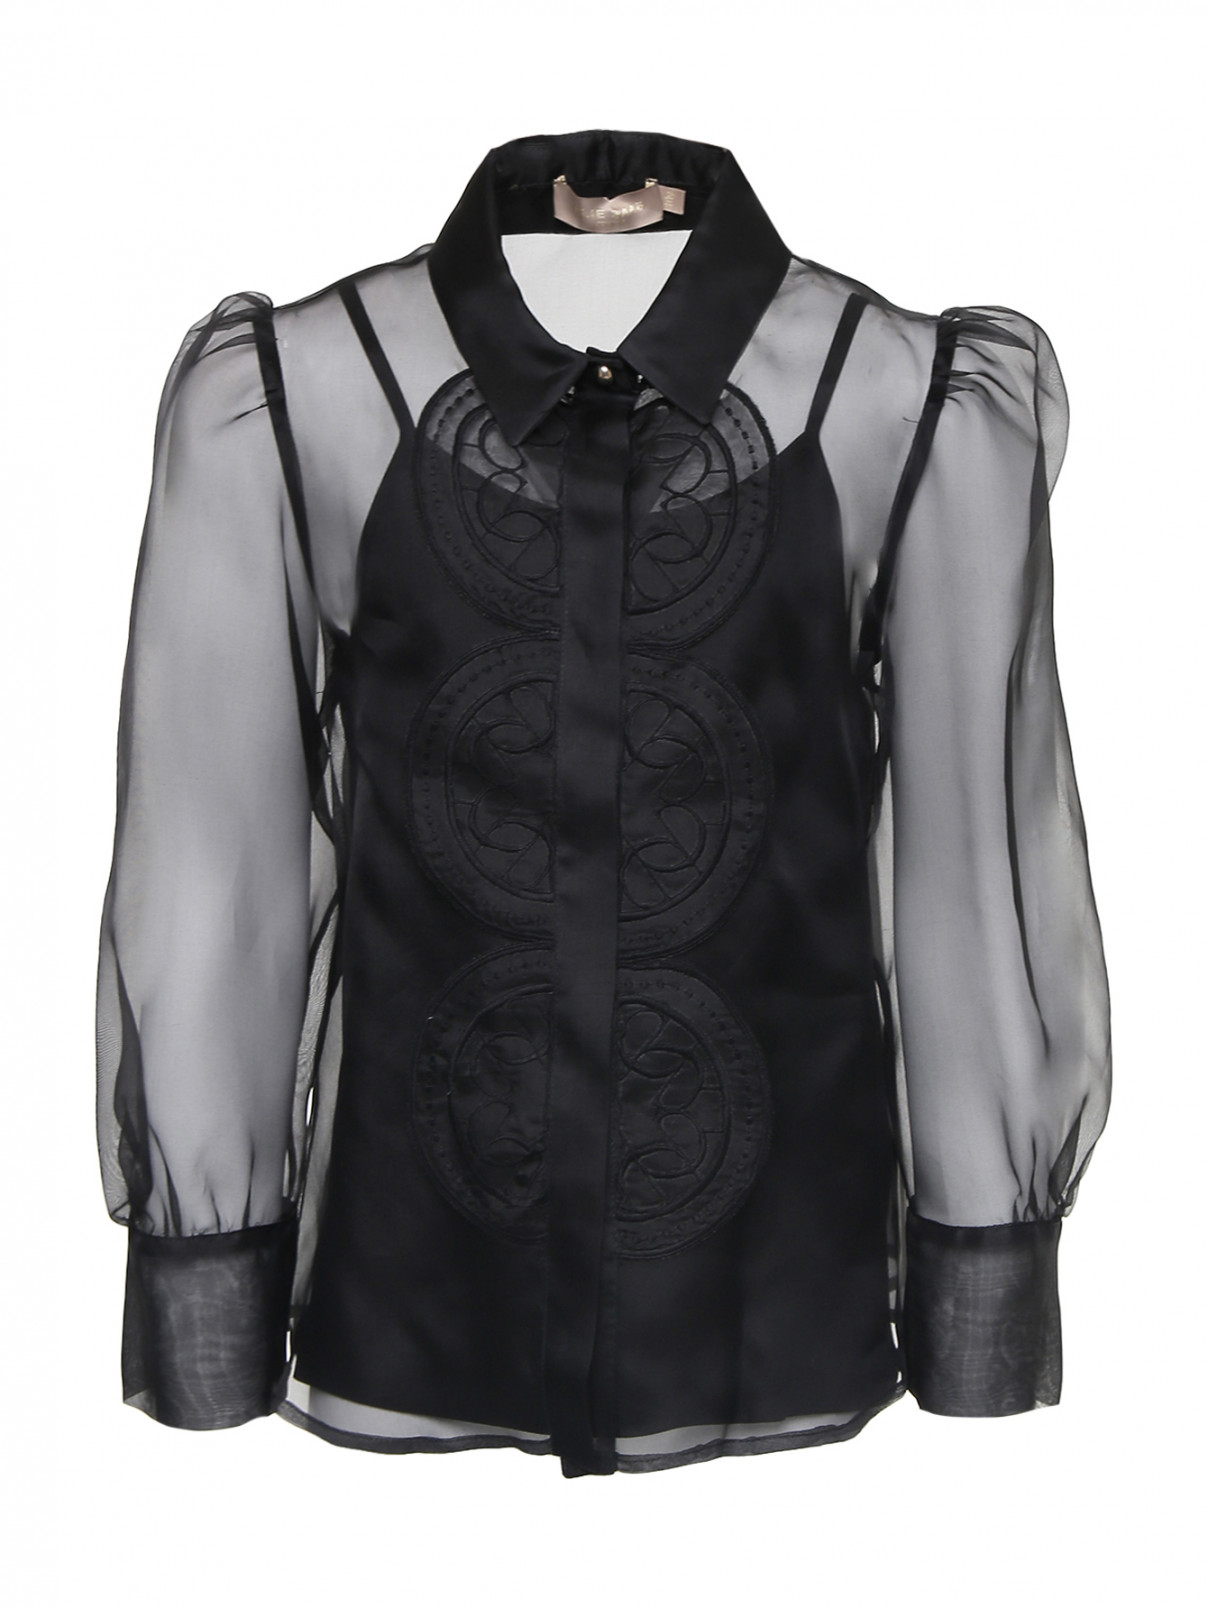 Полупрозрачная блуза из шелка Elie Saab  –  Общий вид  – Цвет:  Черный